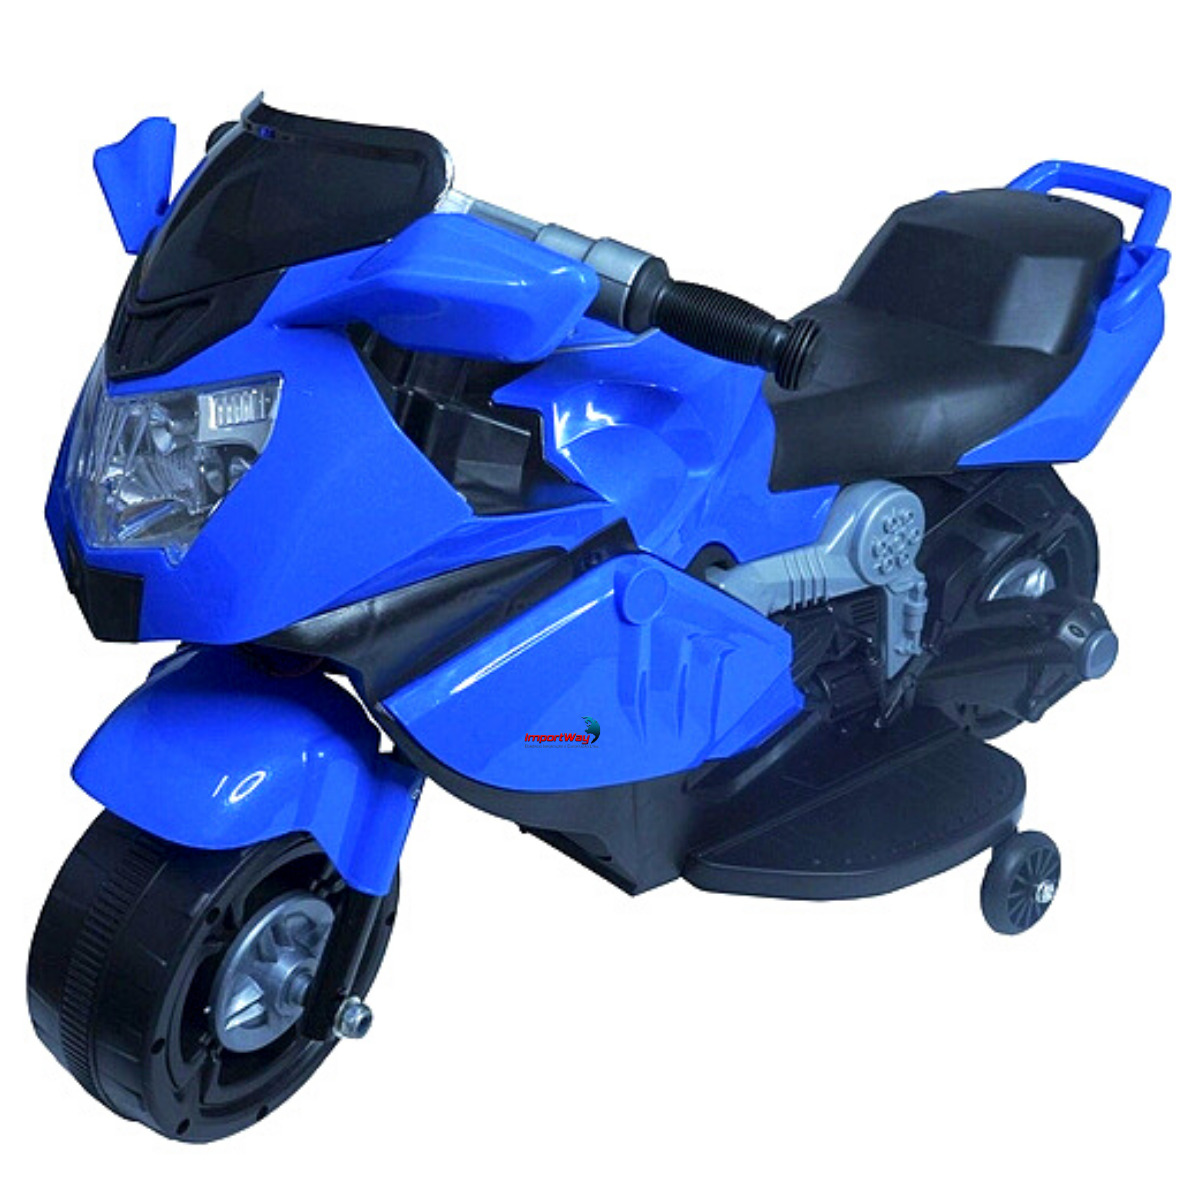 Mini motos, brinquedo de criança?